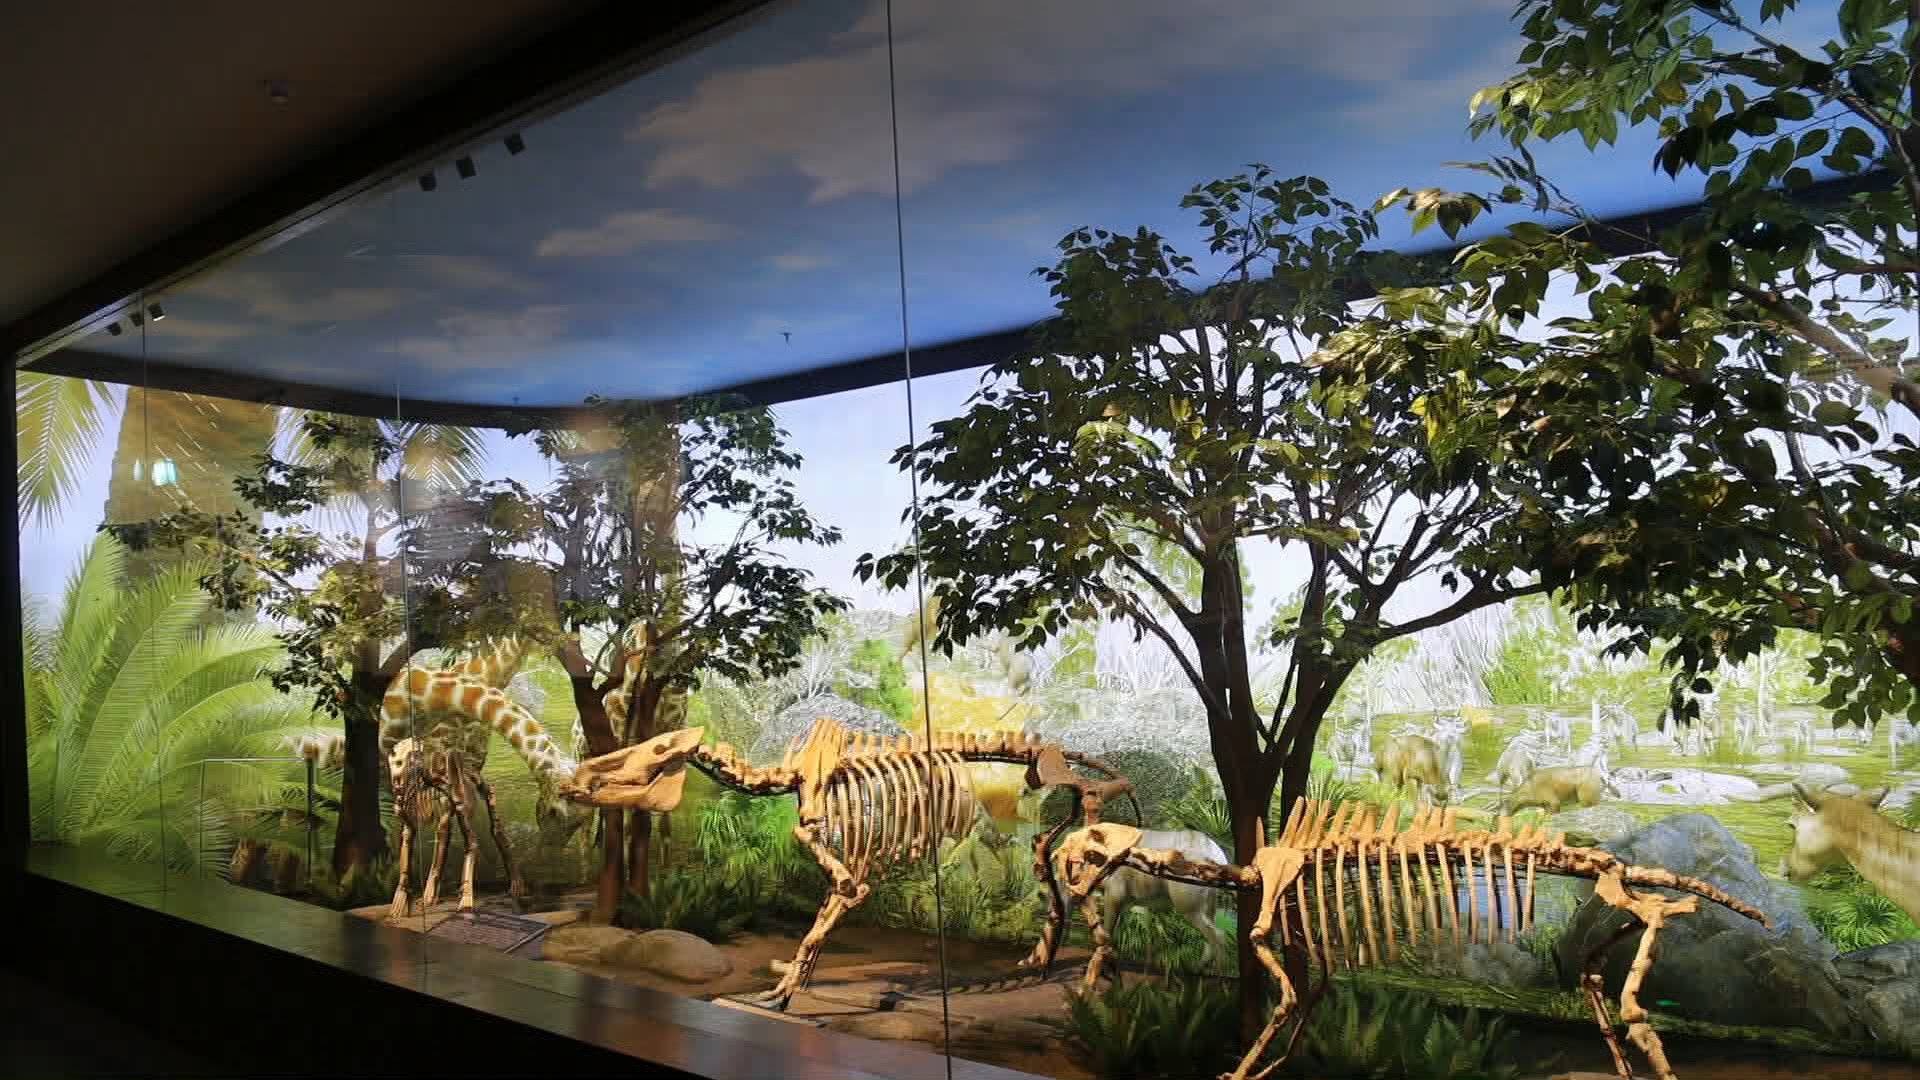 64秒丨和铲齿象古化石面对面 到泉城欧乐堡来一场穿越400万年的对话